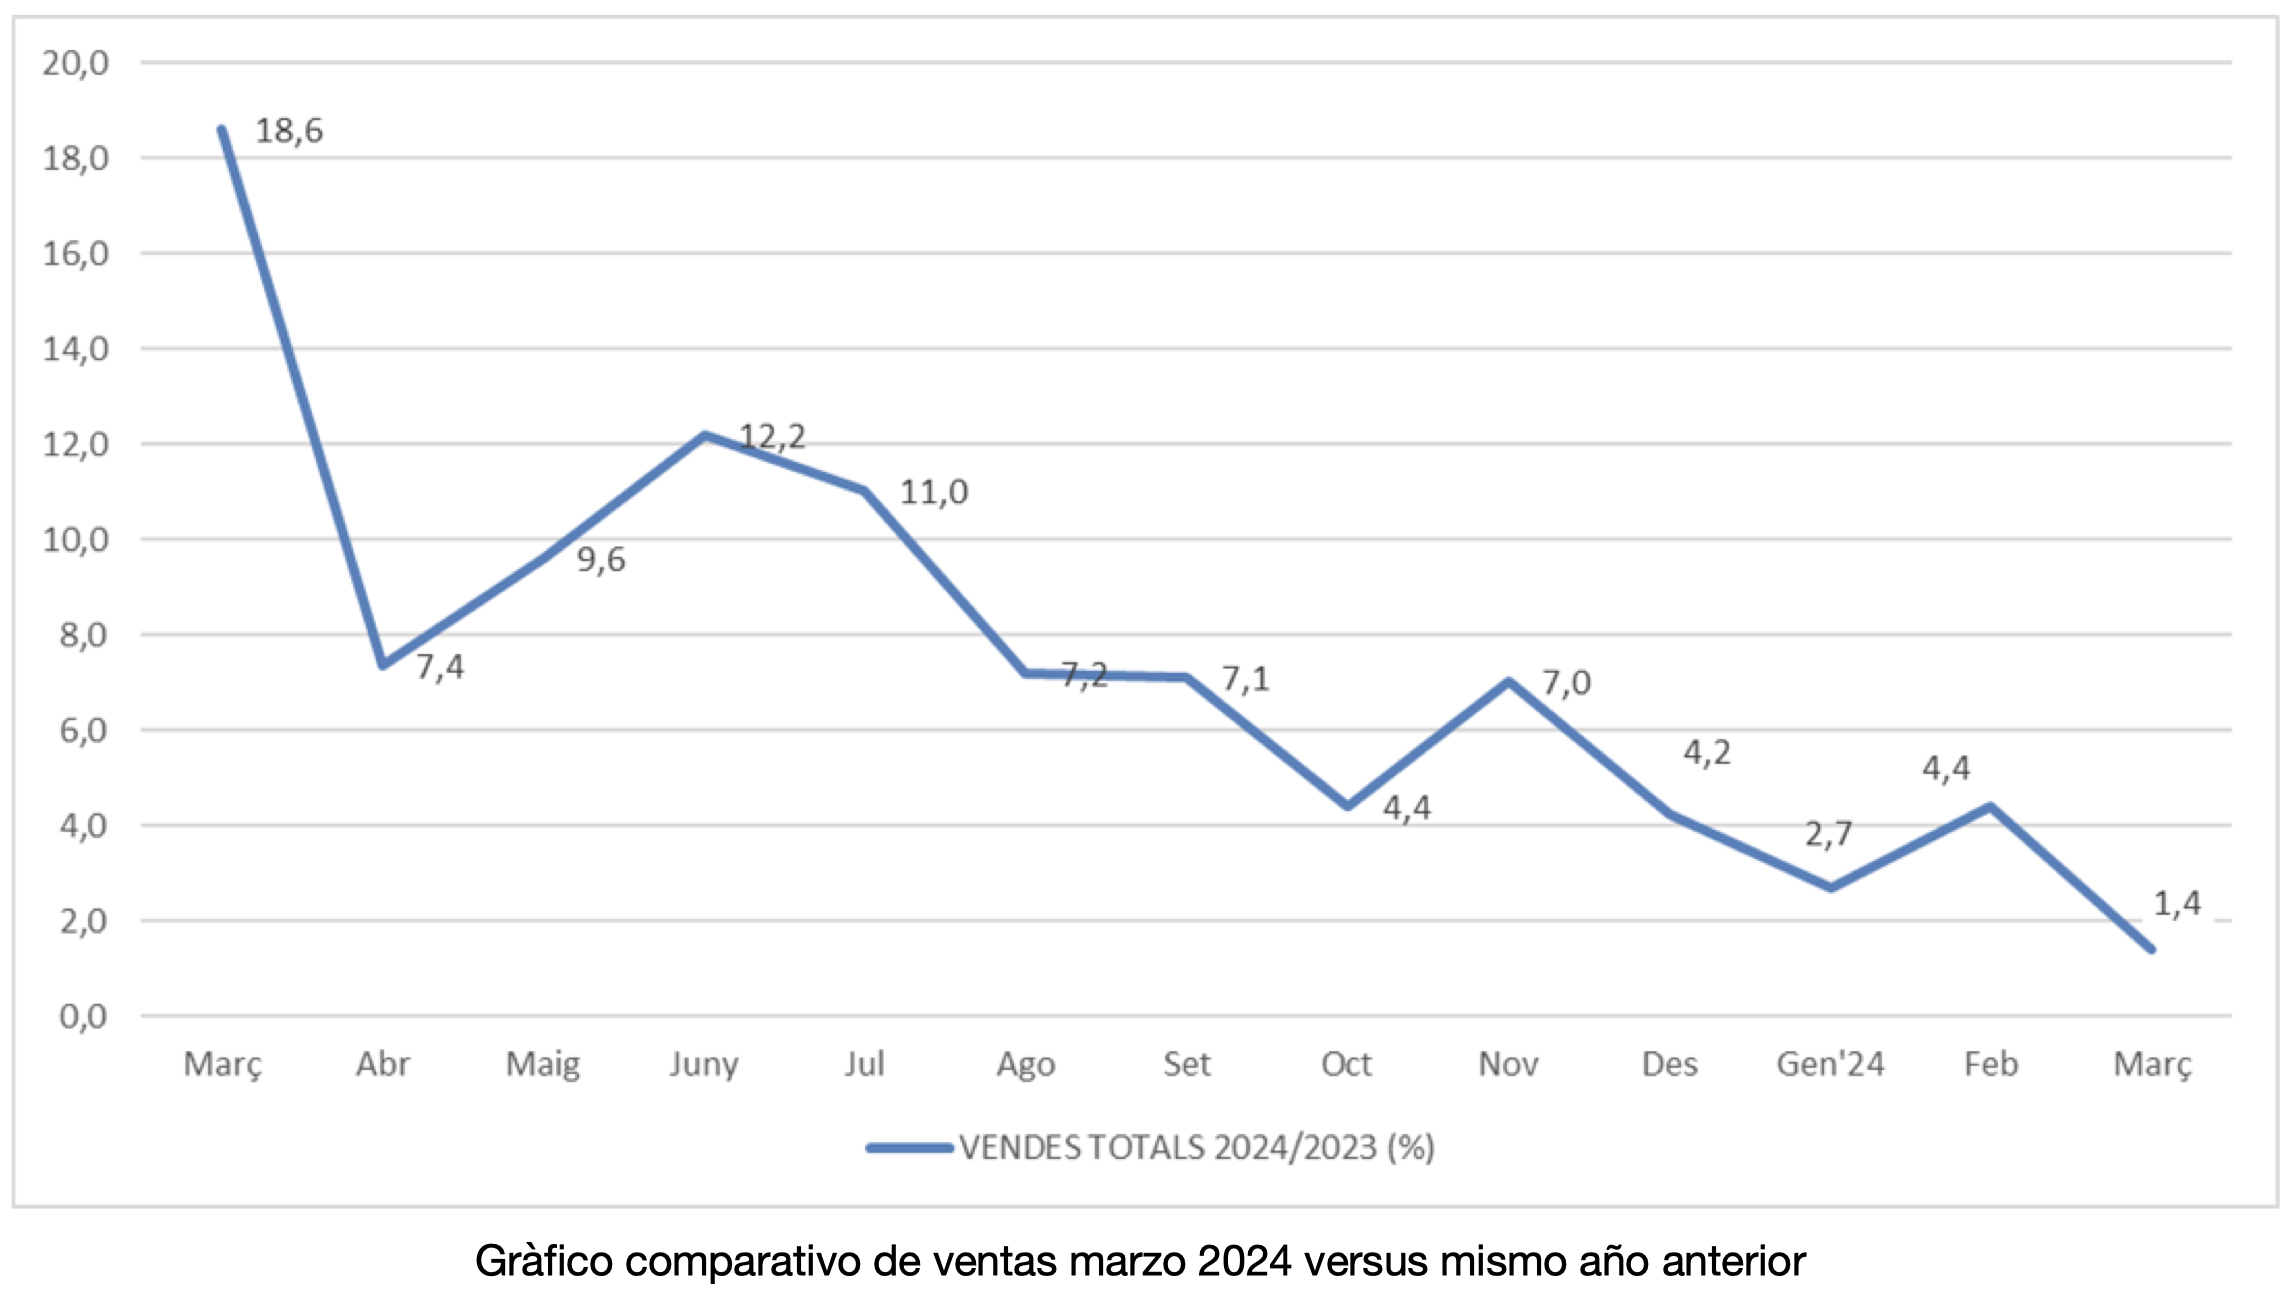 Los establecimientos adheridos a Comertia crecen un 1,4% en marzo, frente al mismo mes del año anterior